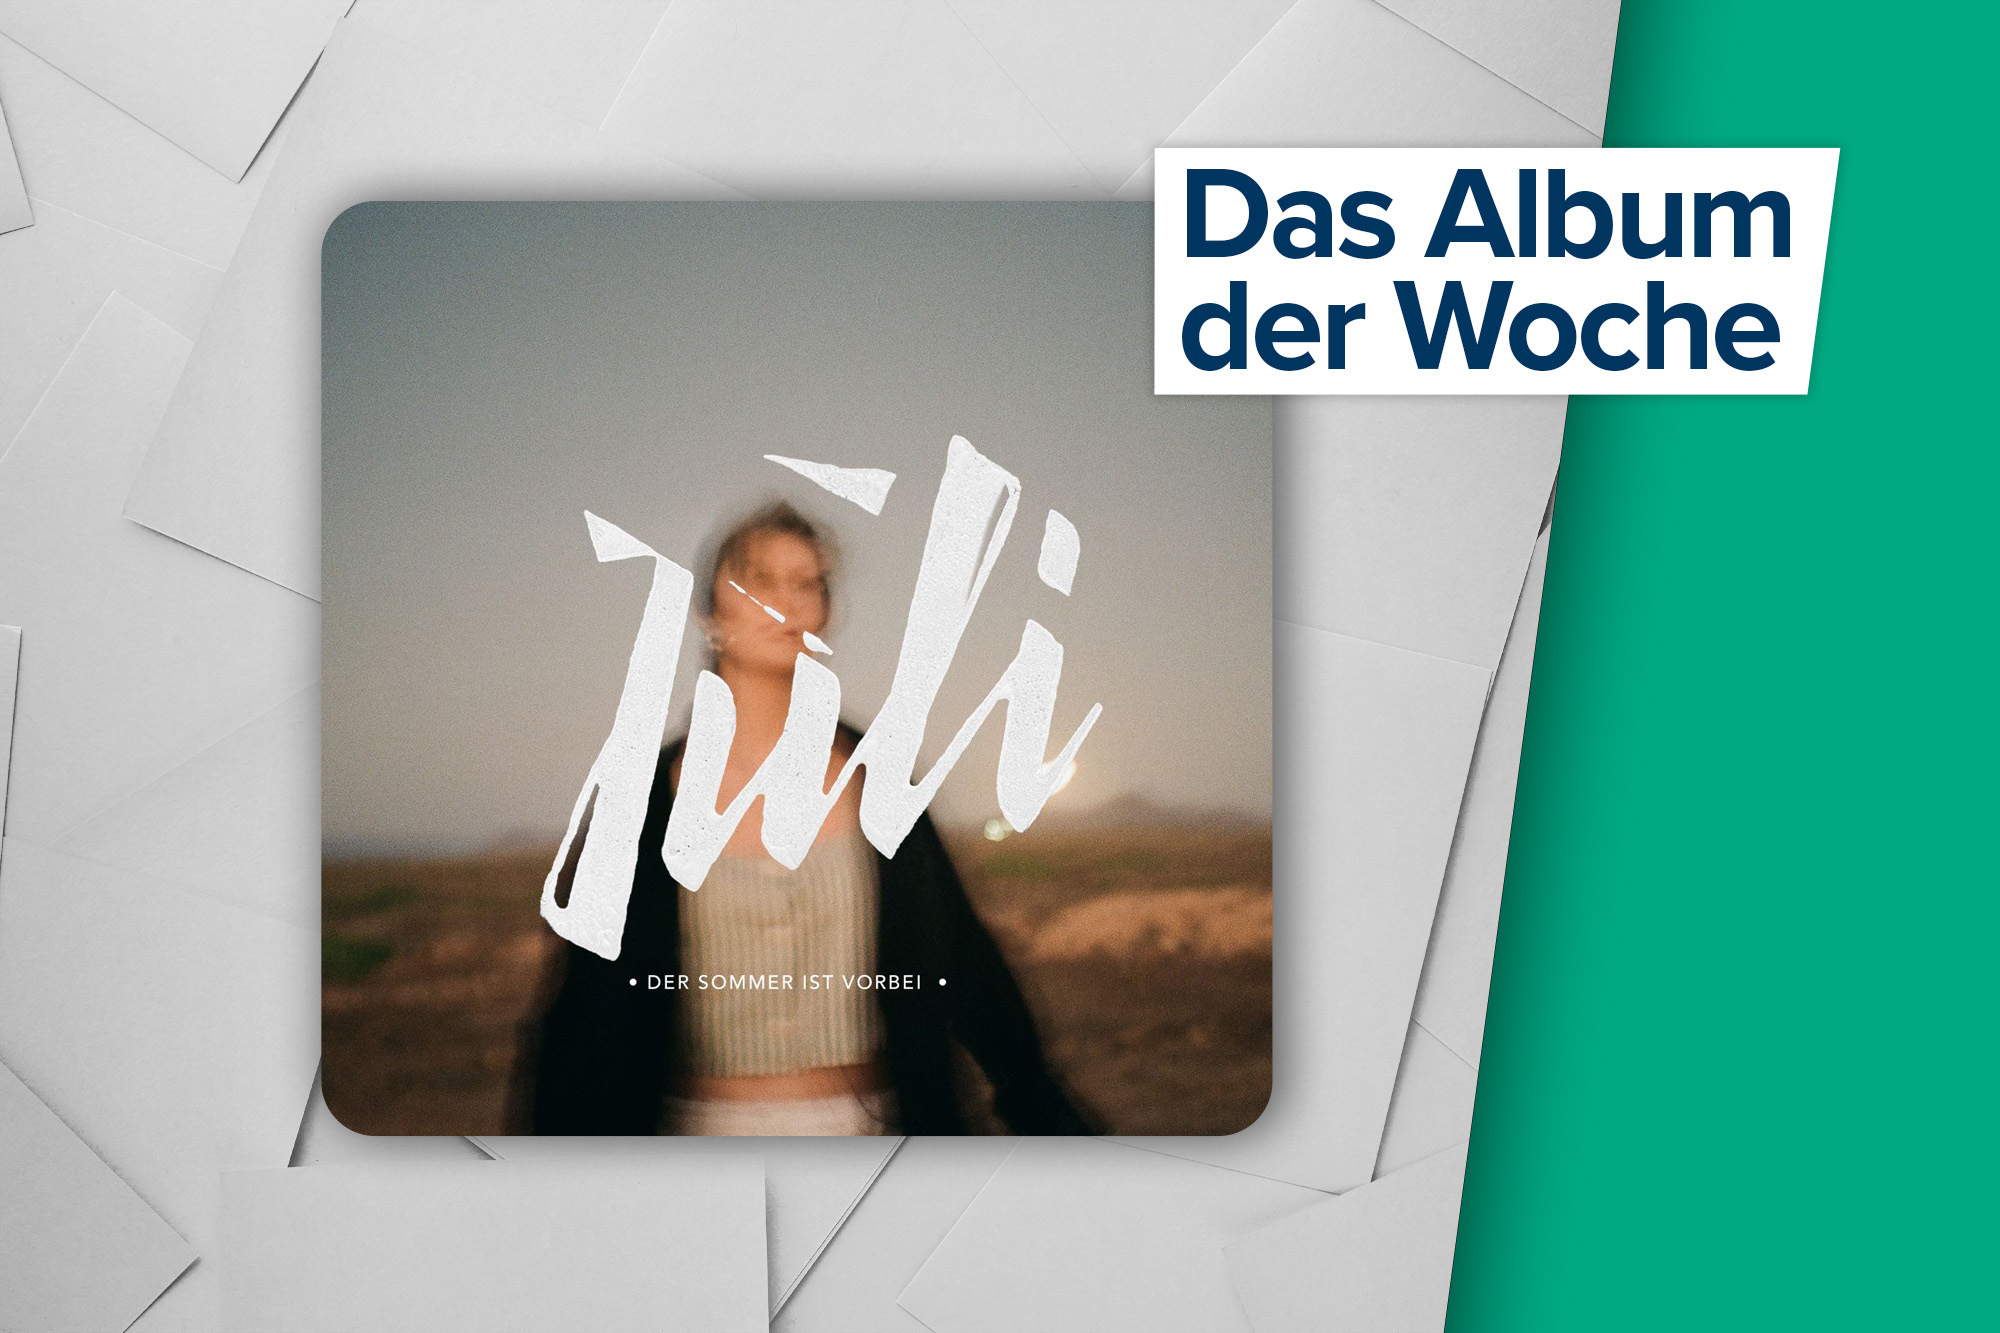 Das Album der Woche: "Der Sommer ist vorbei" von Juli (UMD/Polydor)